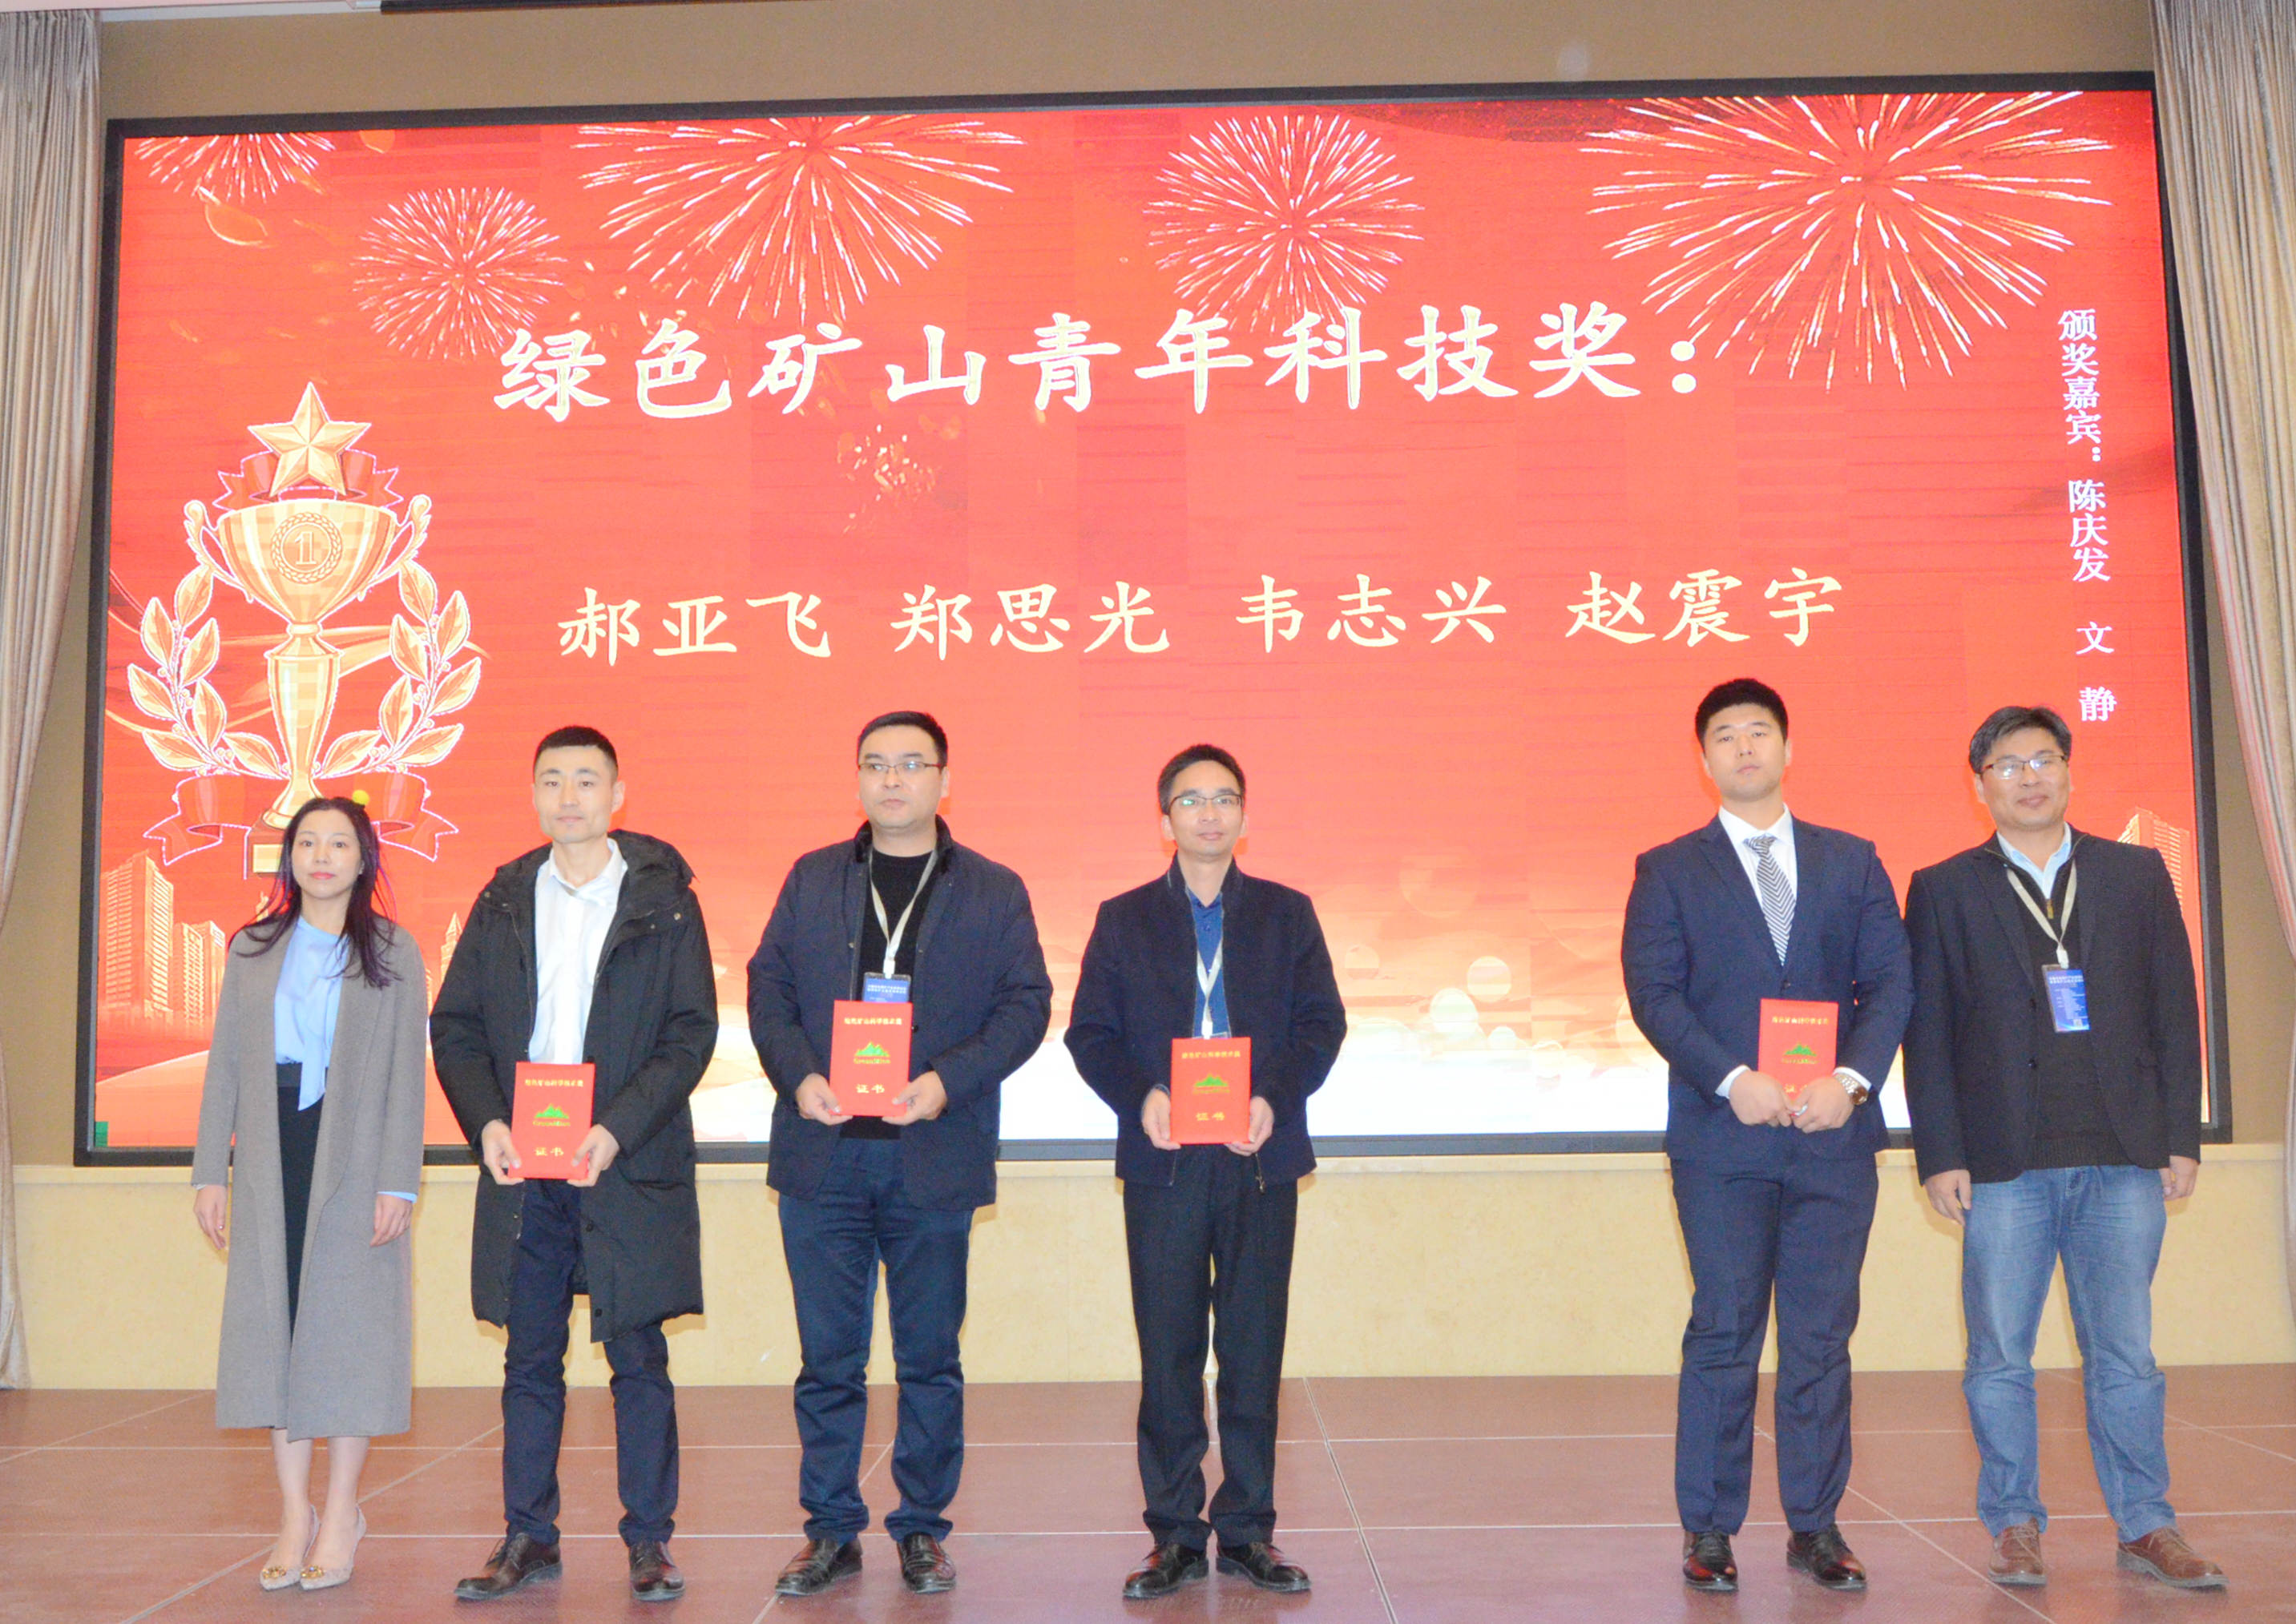 2020年中国非金属矿产业高峰论坛暨绿色矿山建设高峰论坛在河南郑州成功举办！